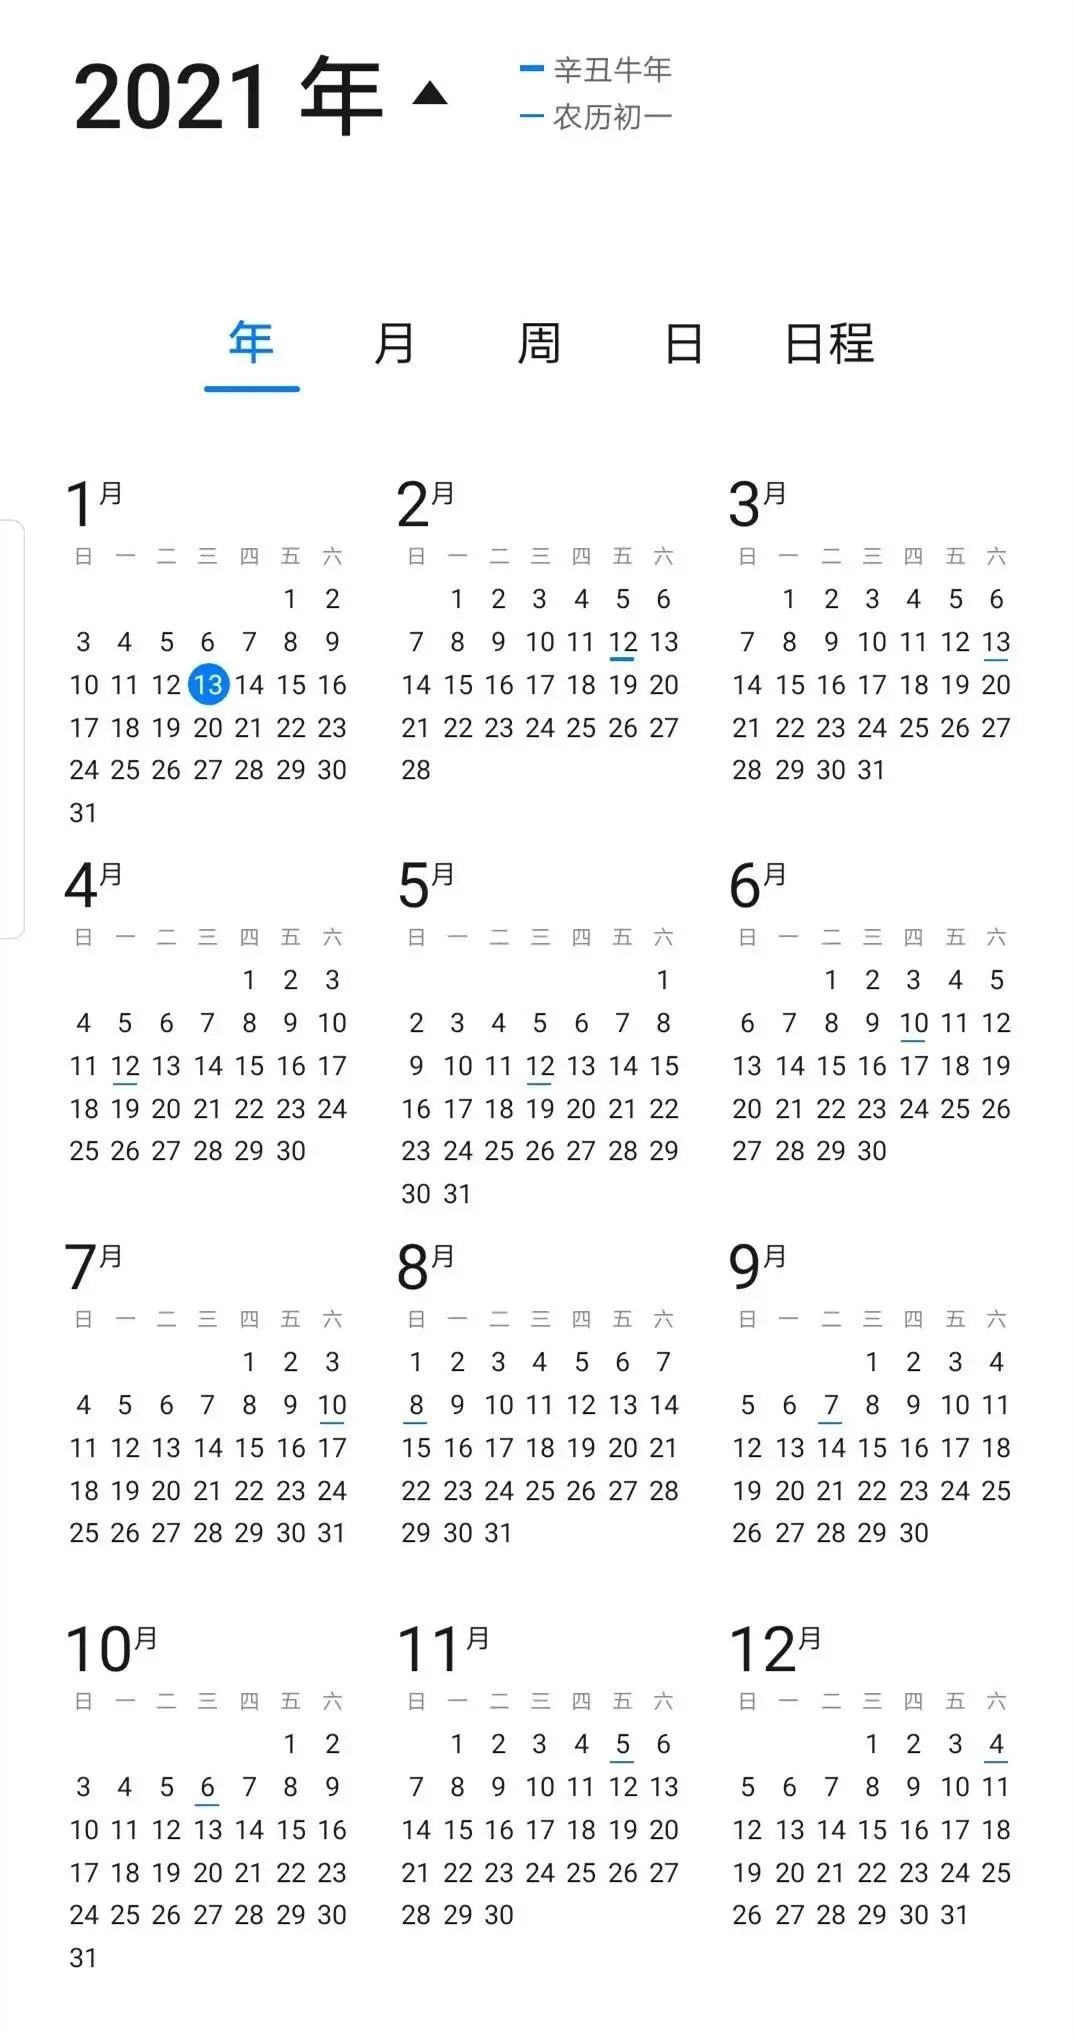 什么?2021年与1971年的日历竟然一模一样?